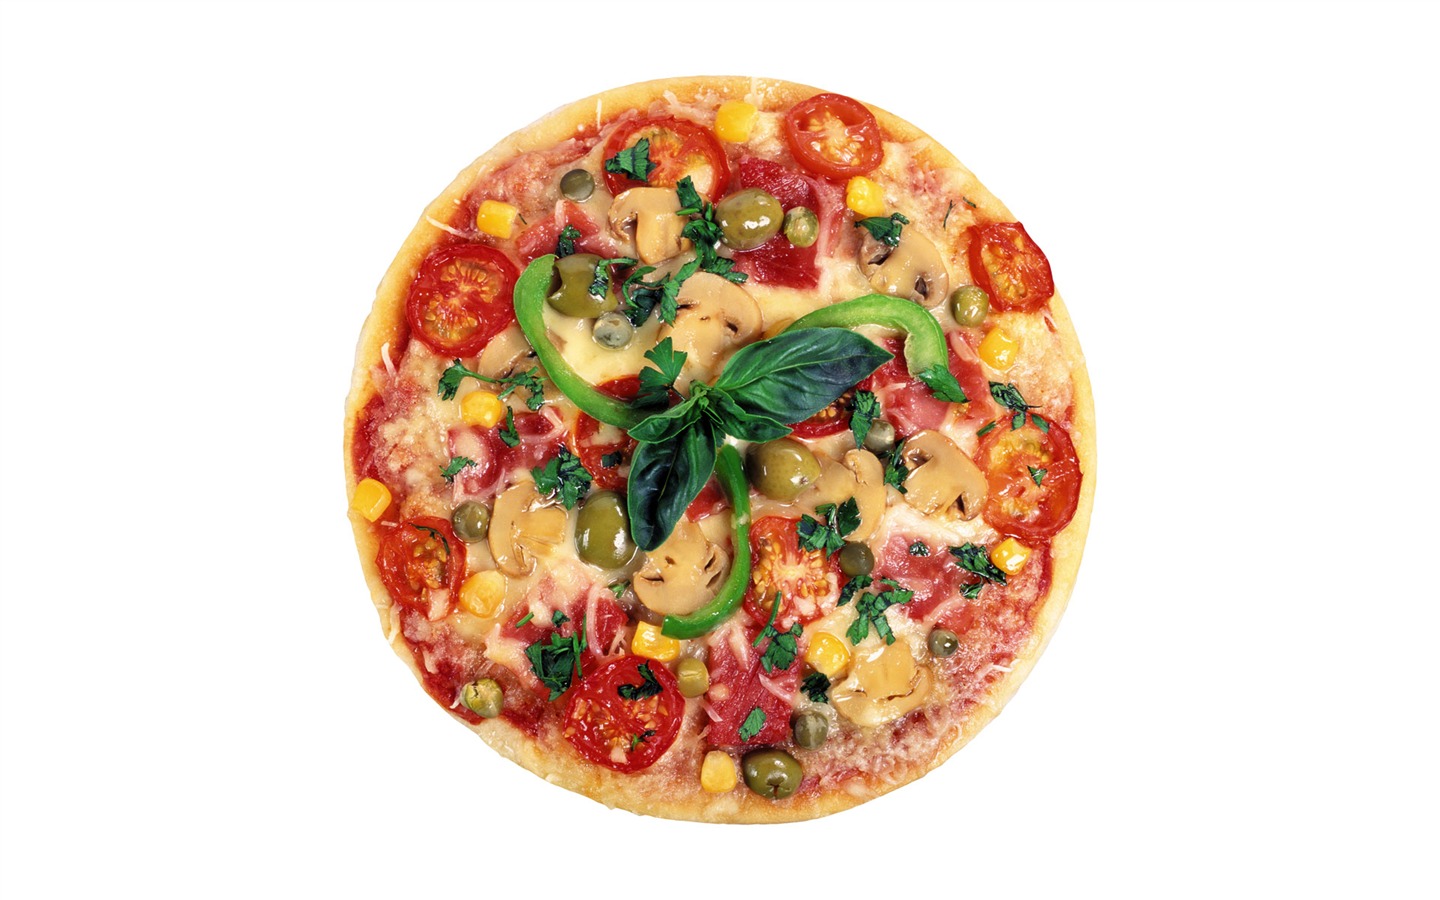 Fondos de pizzerías de Alimentos (3) #3 - 1440x900